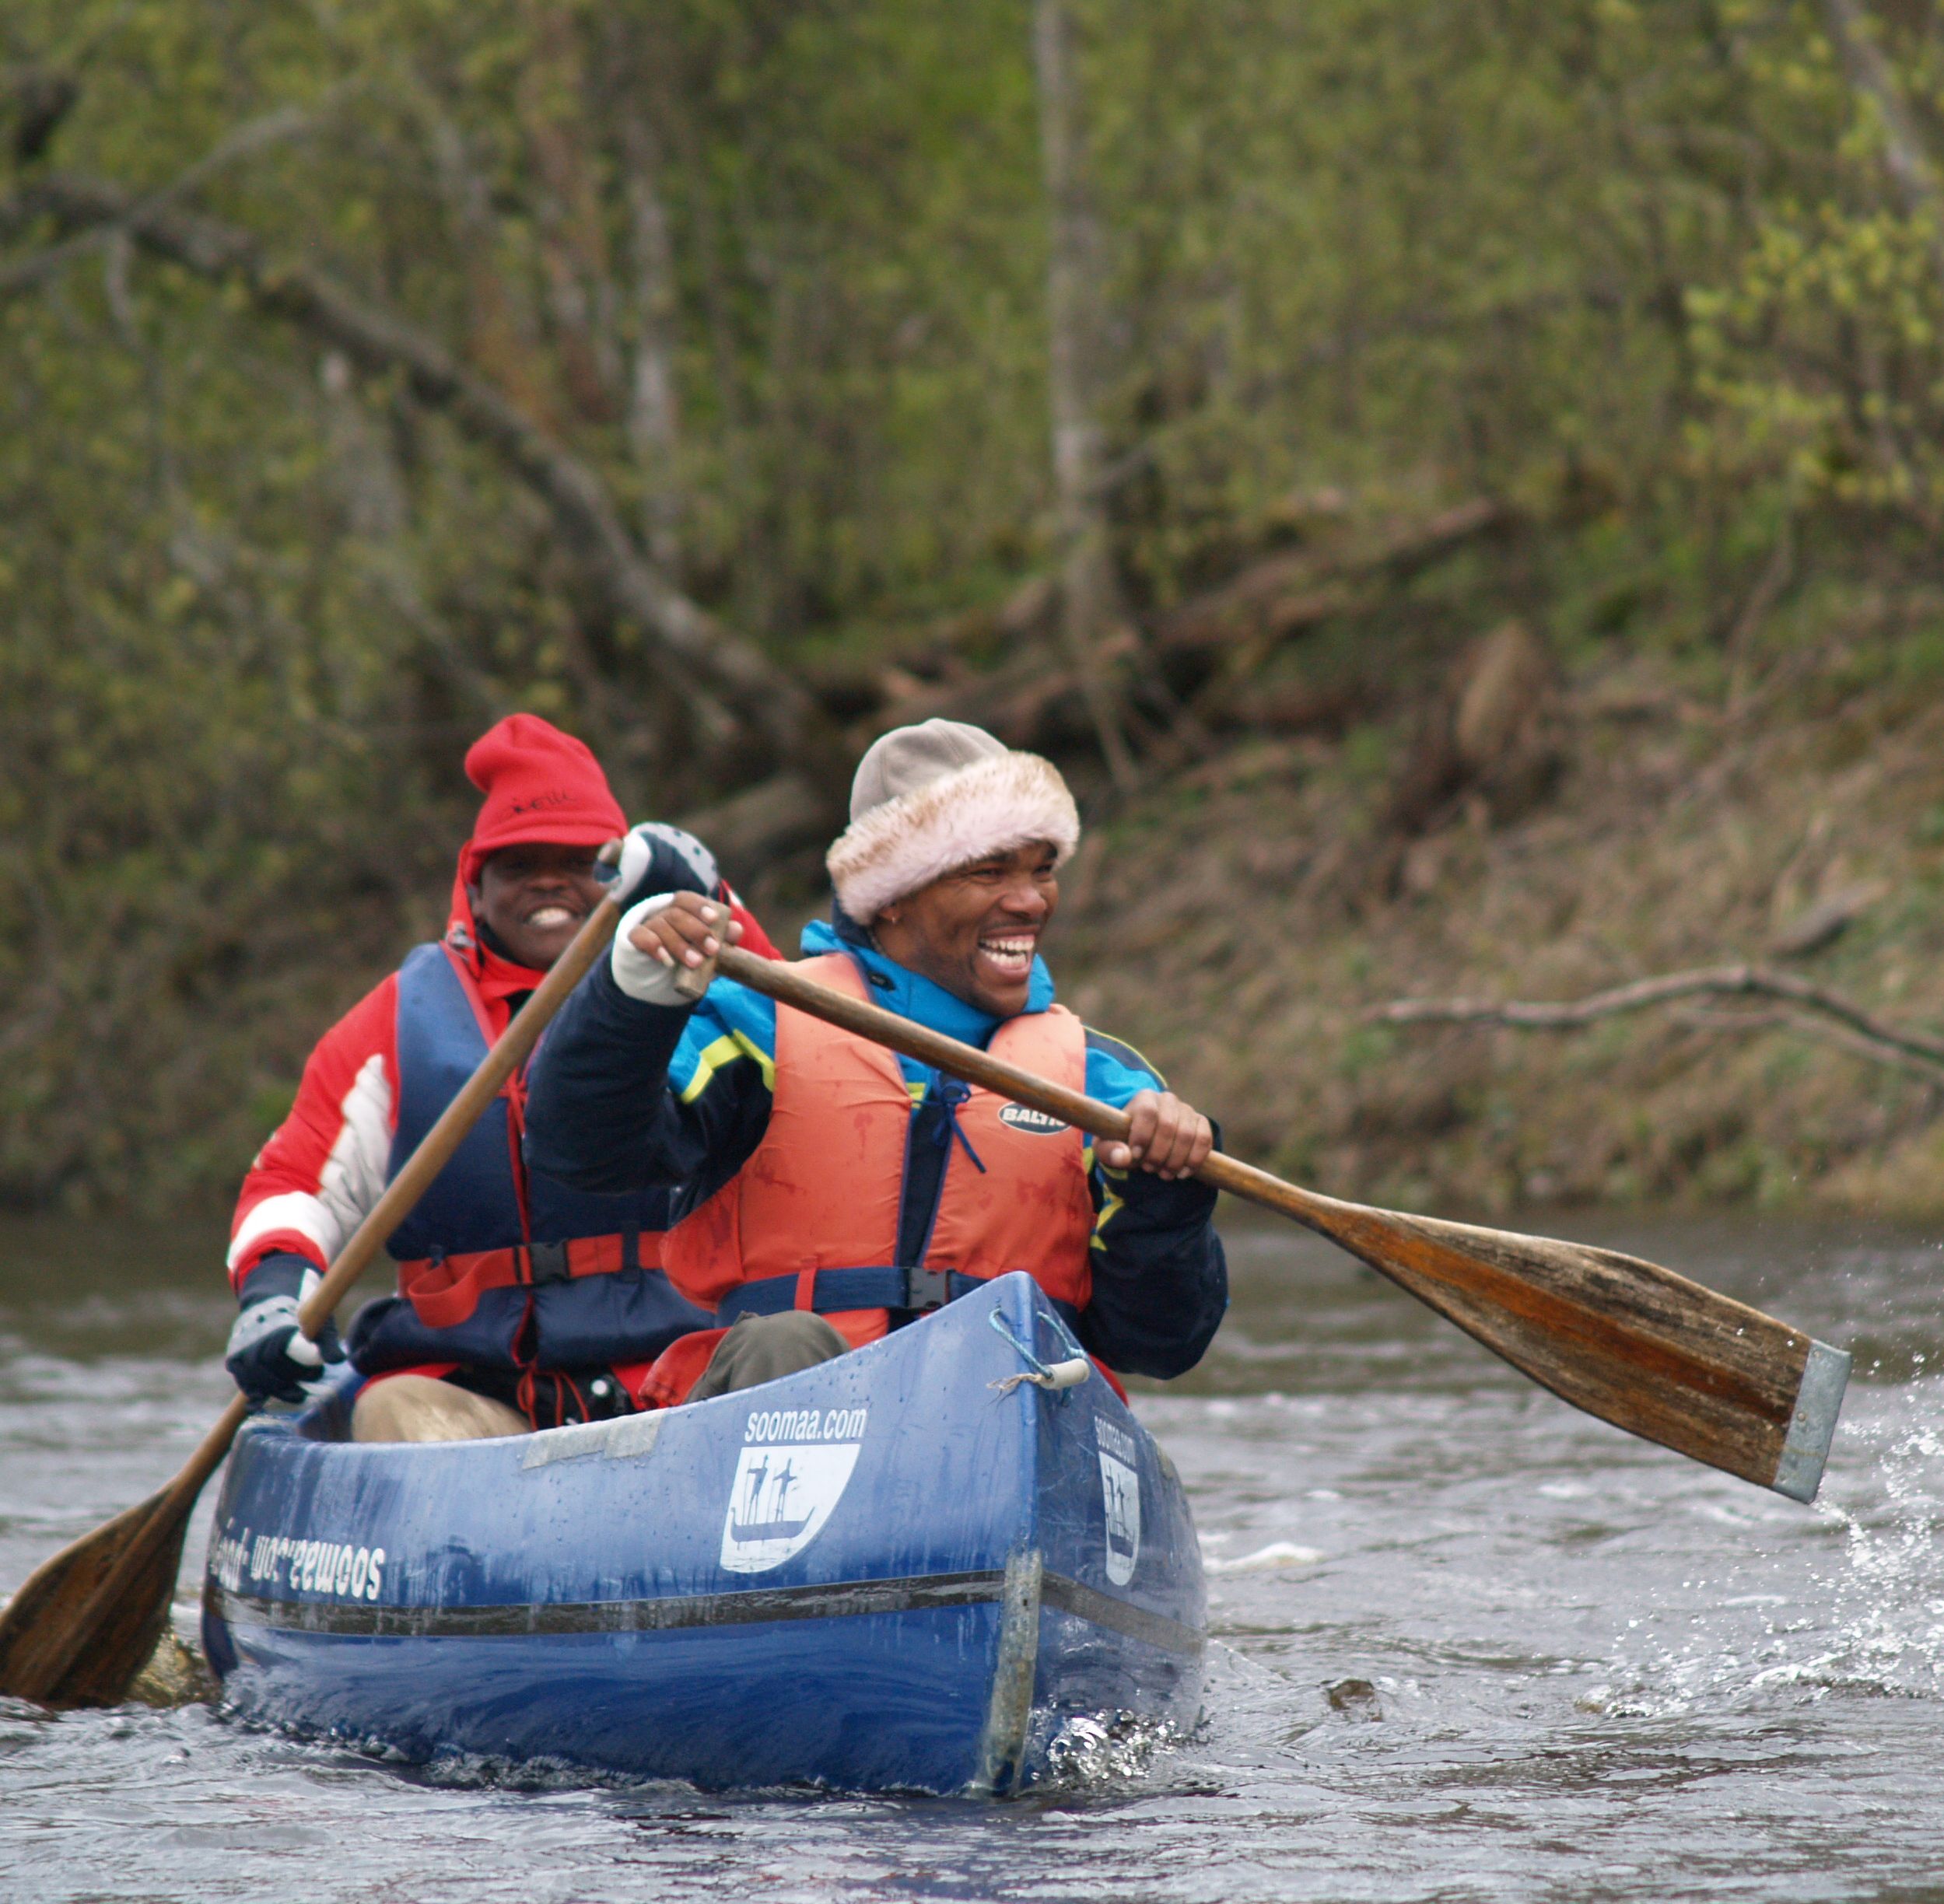 Canoe Rental in Soomaa